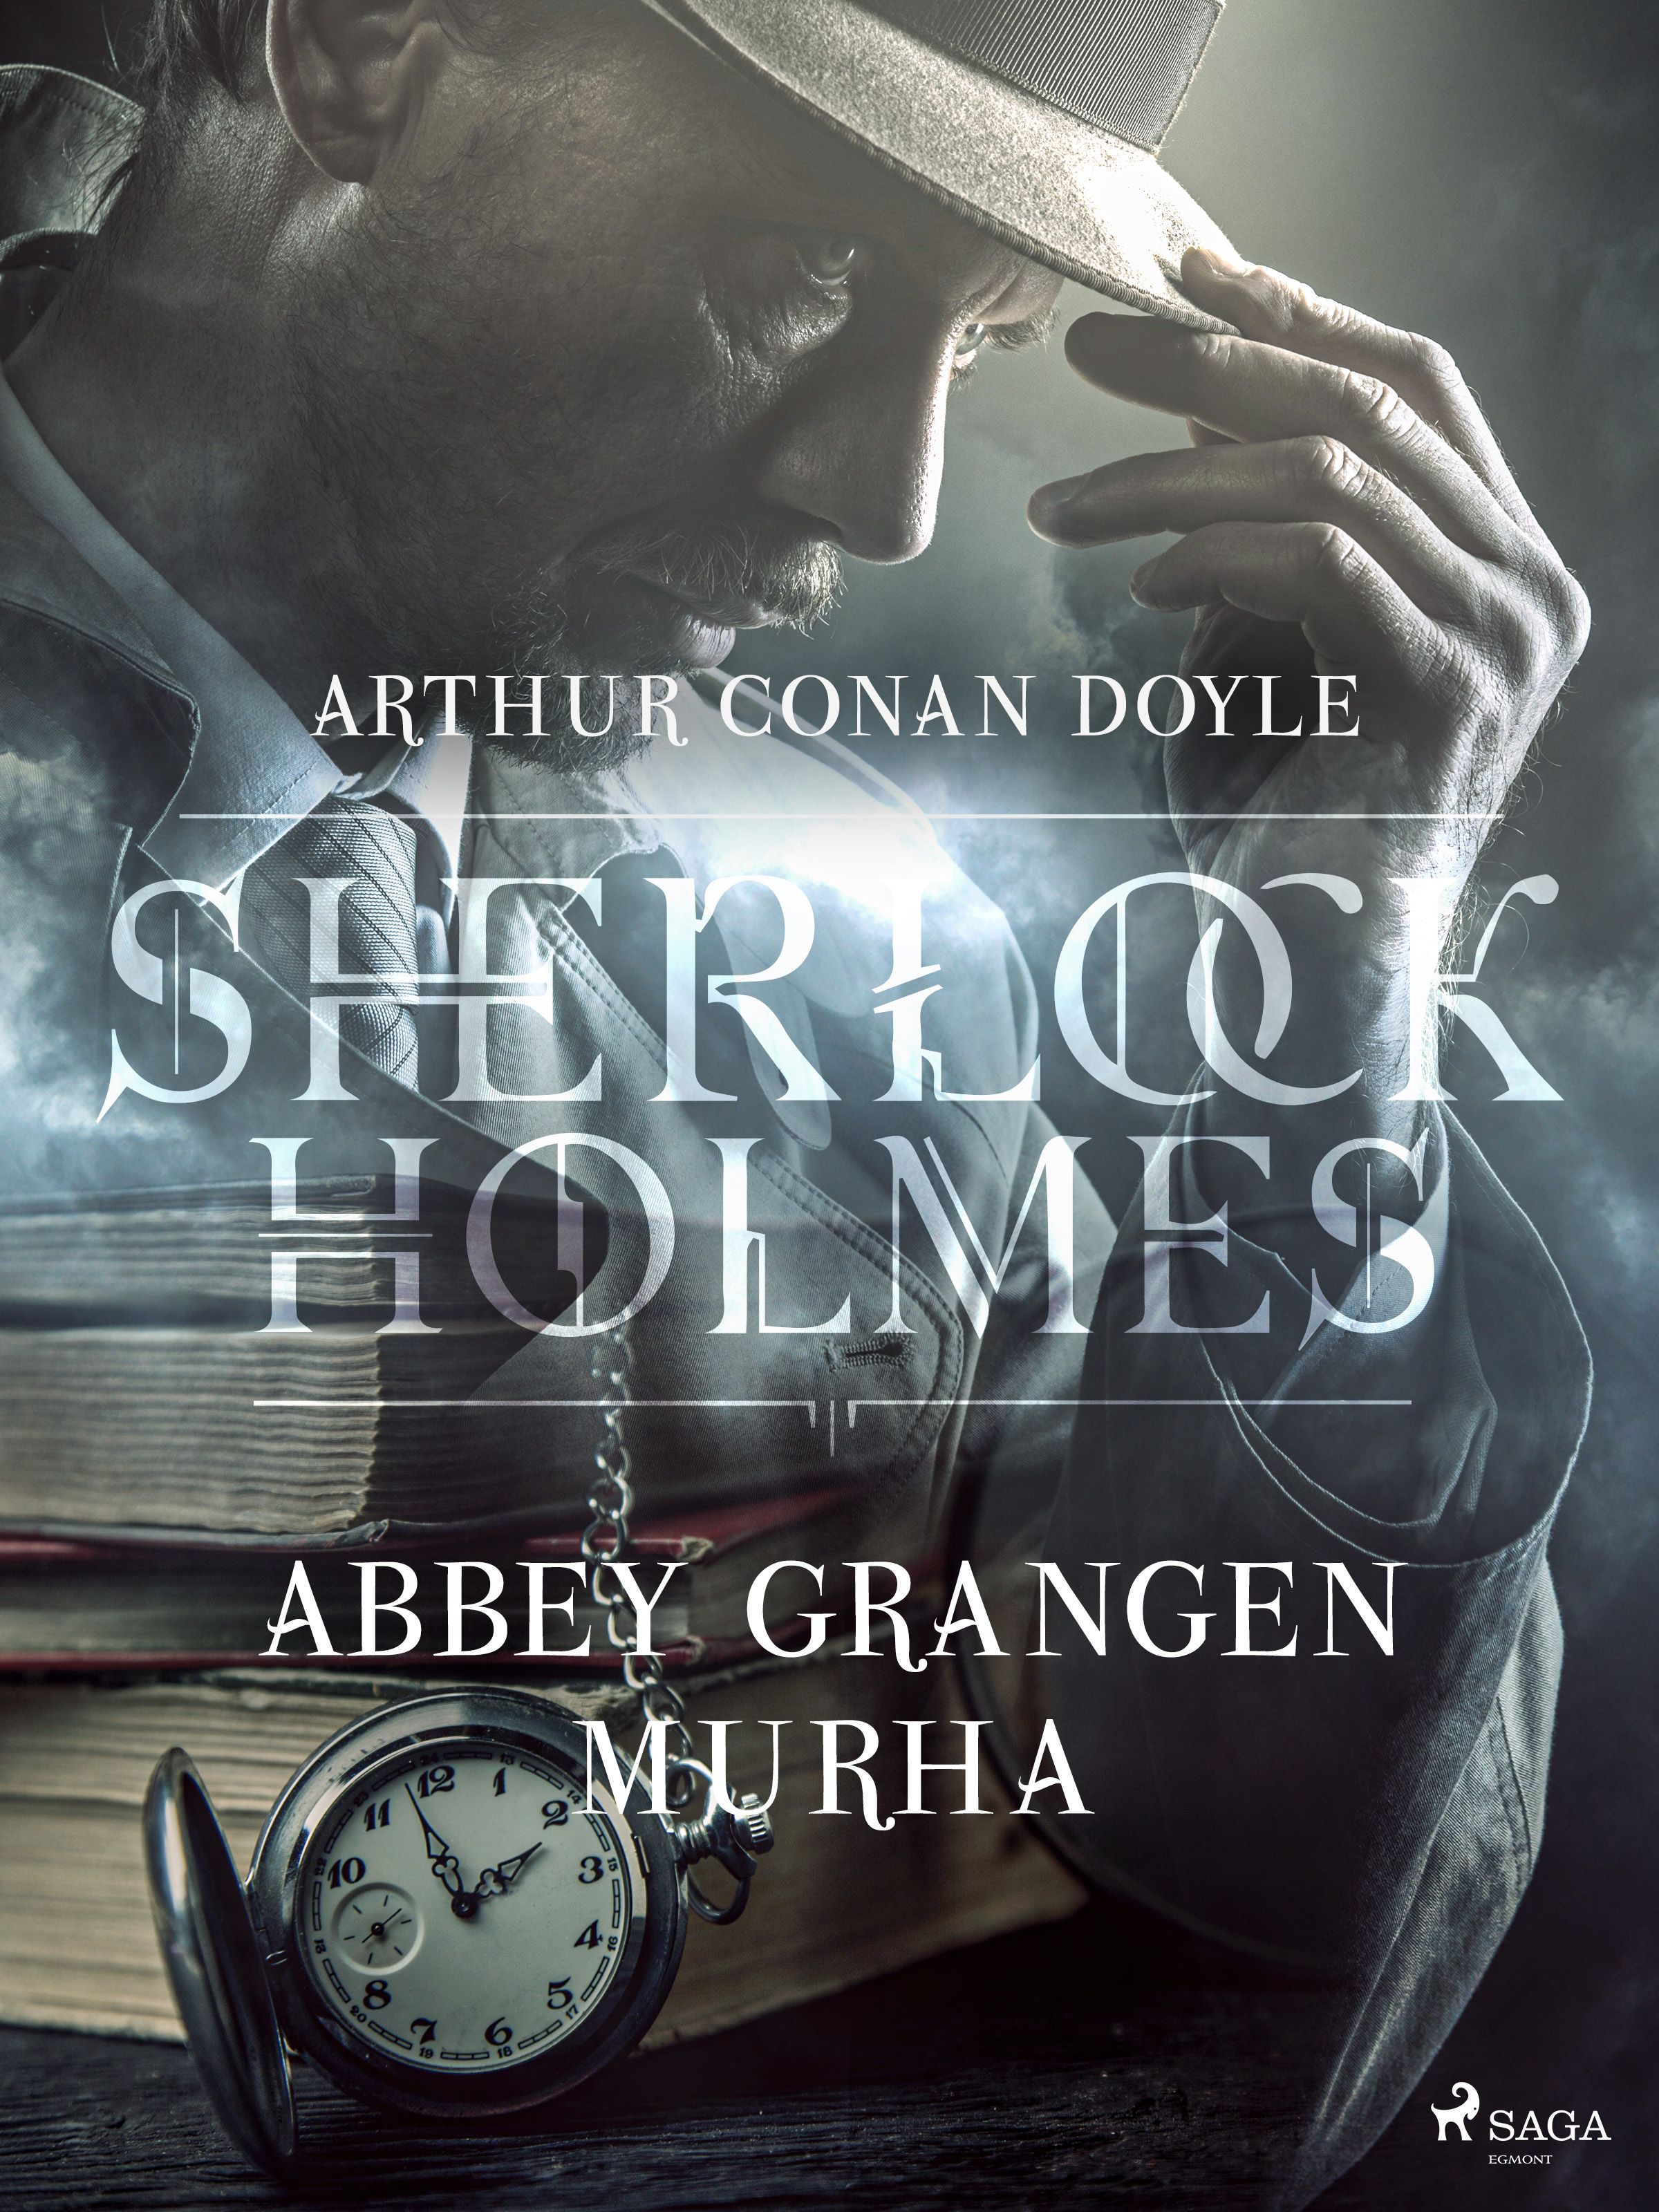 Abbey Grangen murha, eBook by Arthur Conan Doyle